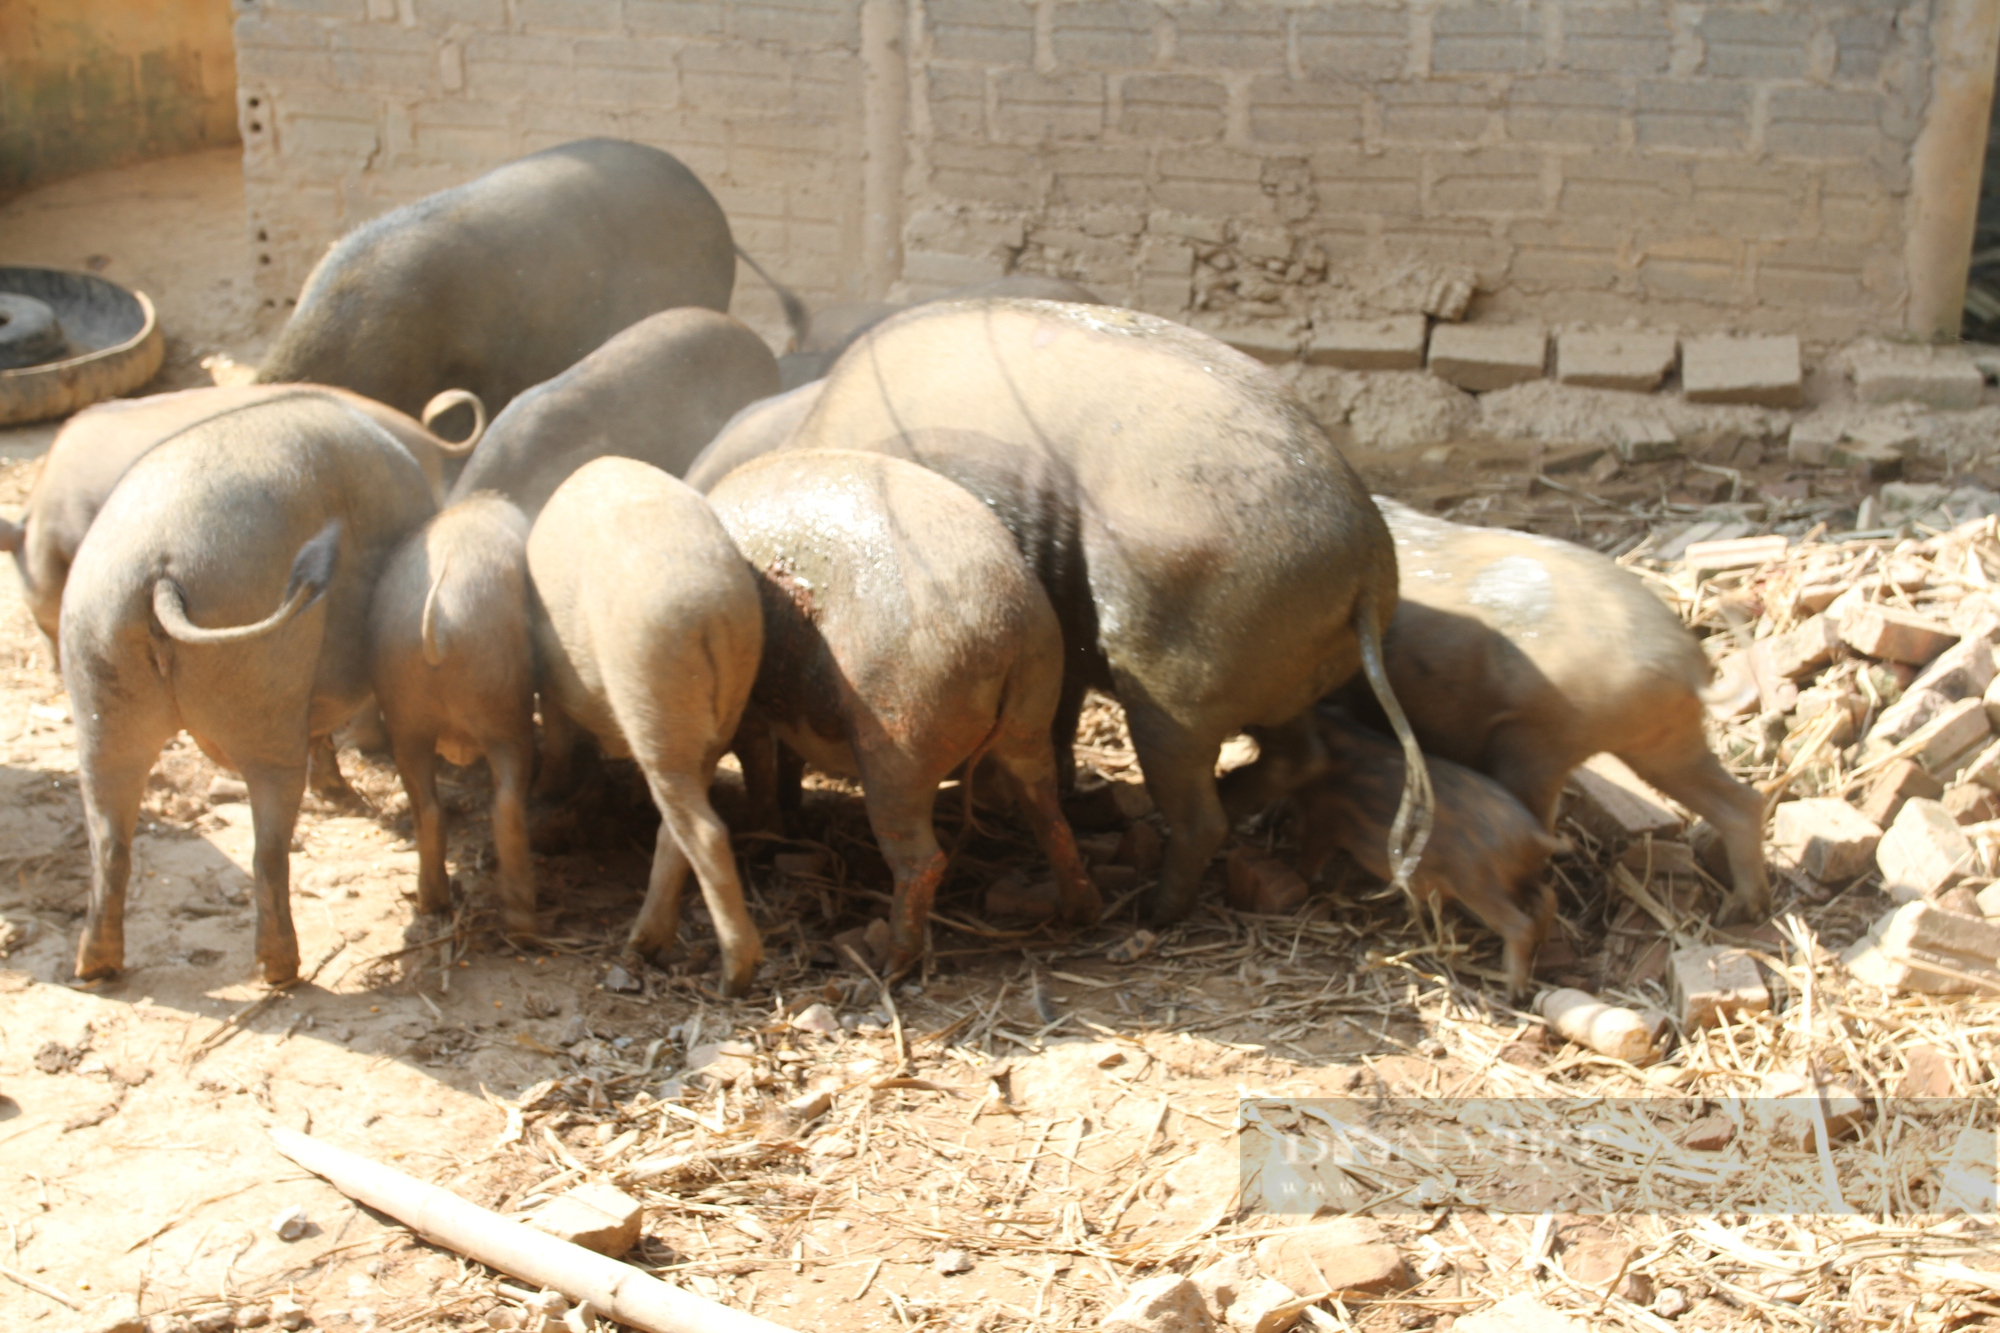 Thái Nguyên: Định hướng sản xuất sản phẩm sạch, HTX này nuôi lợn rừng chỉ cho ăn toàn rau củ quả - Ảnh 3.